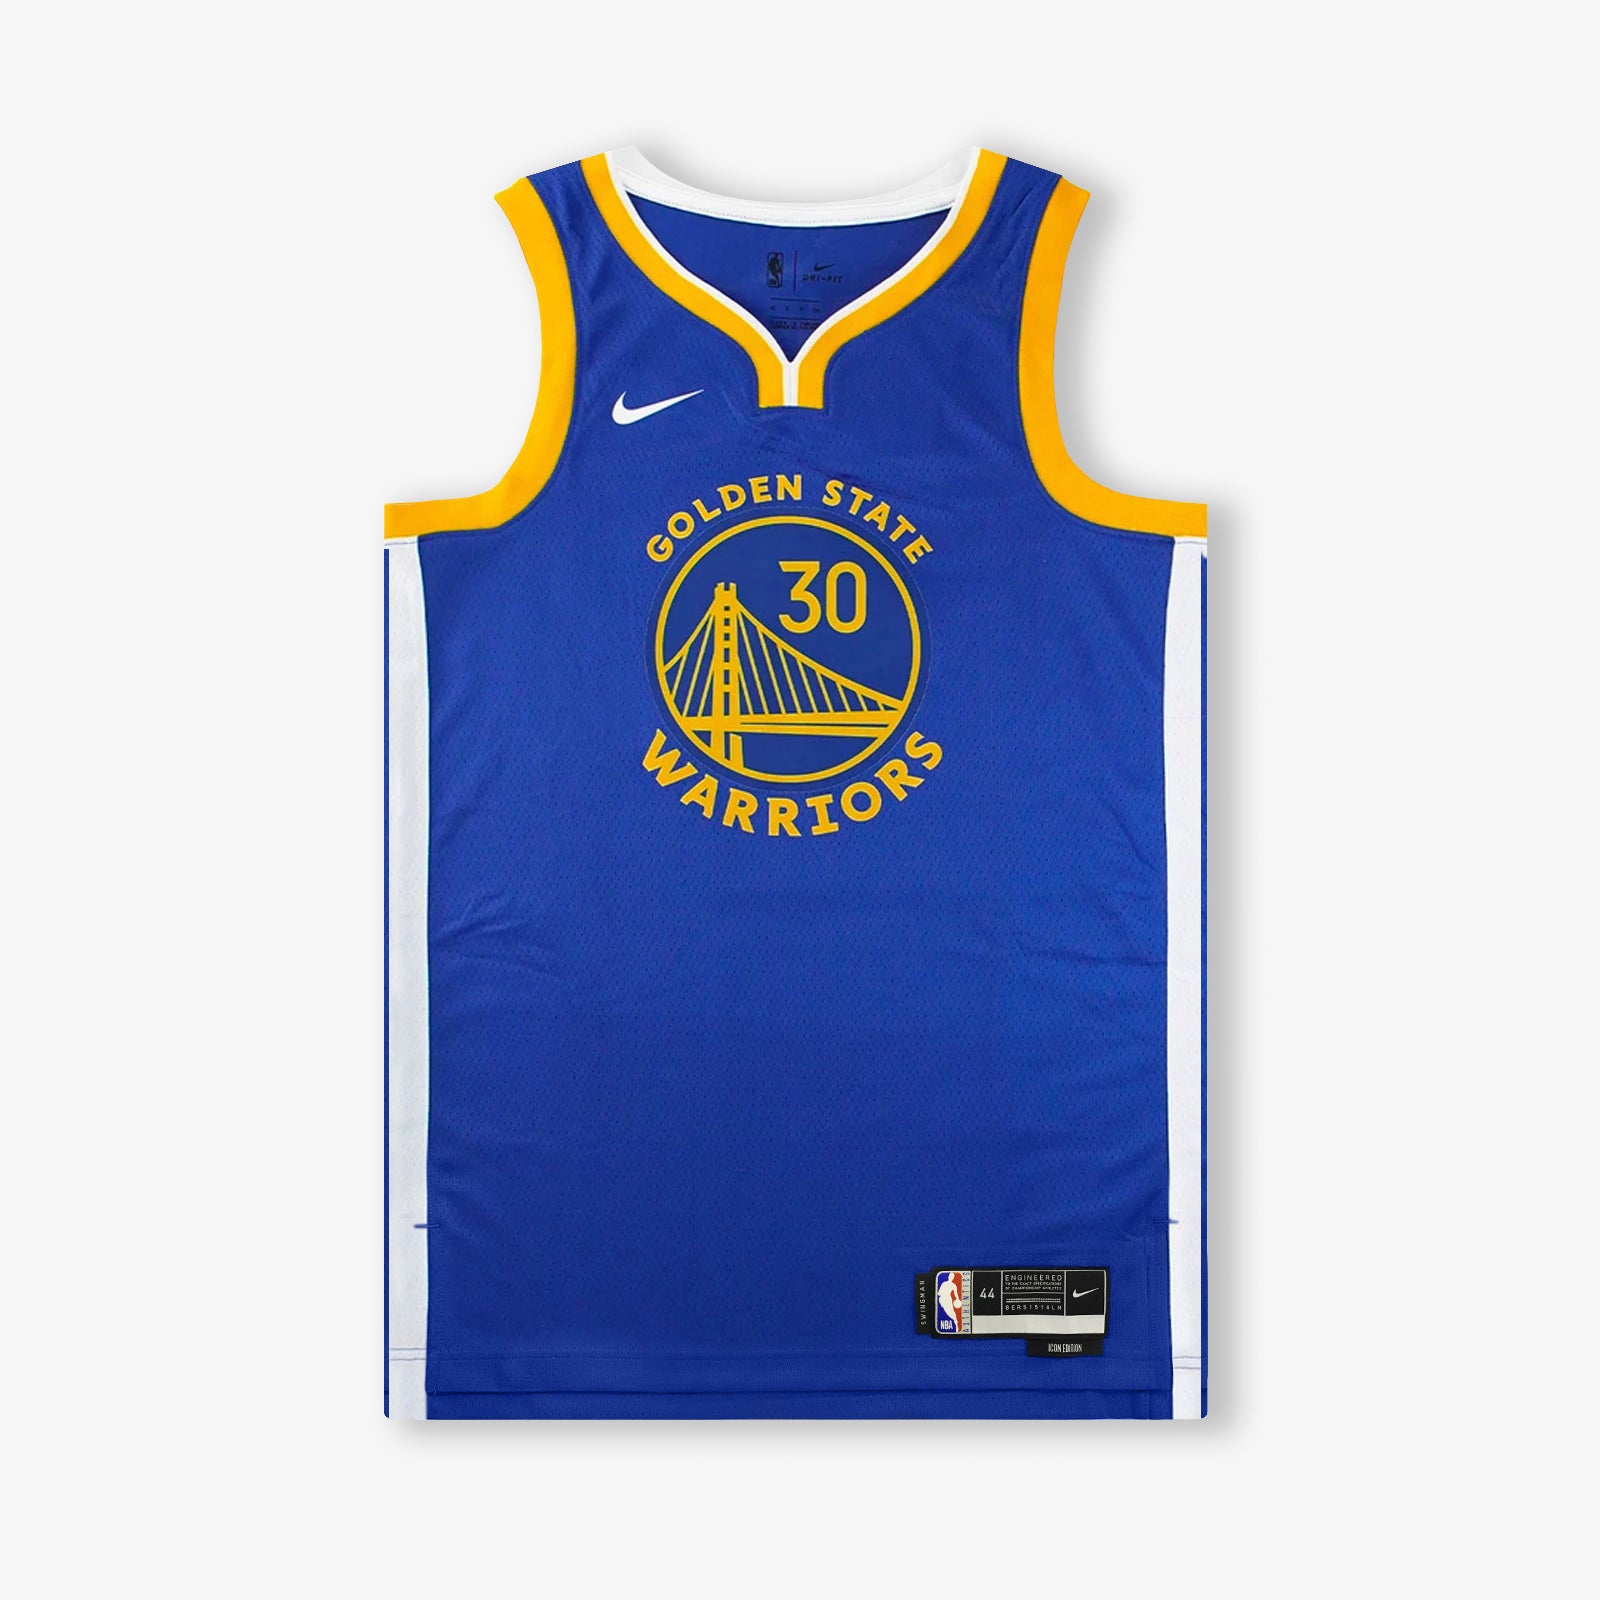 Golden State Warriors Jersey Kids Ireland - Buy Cheap NBA Jerseys